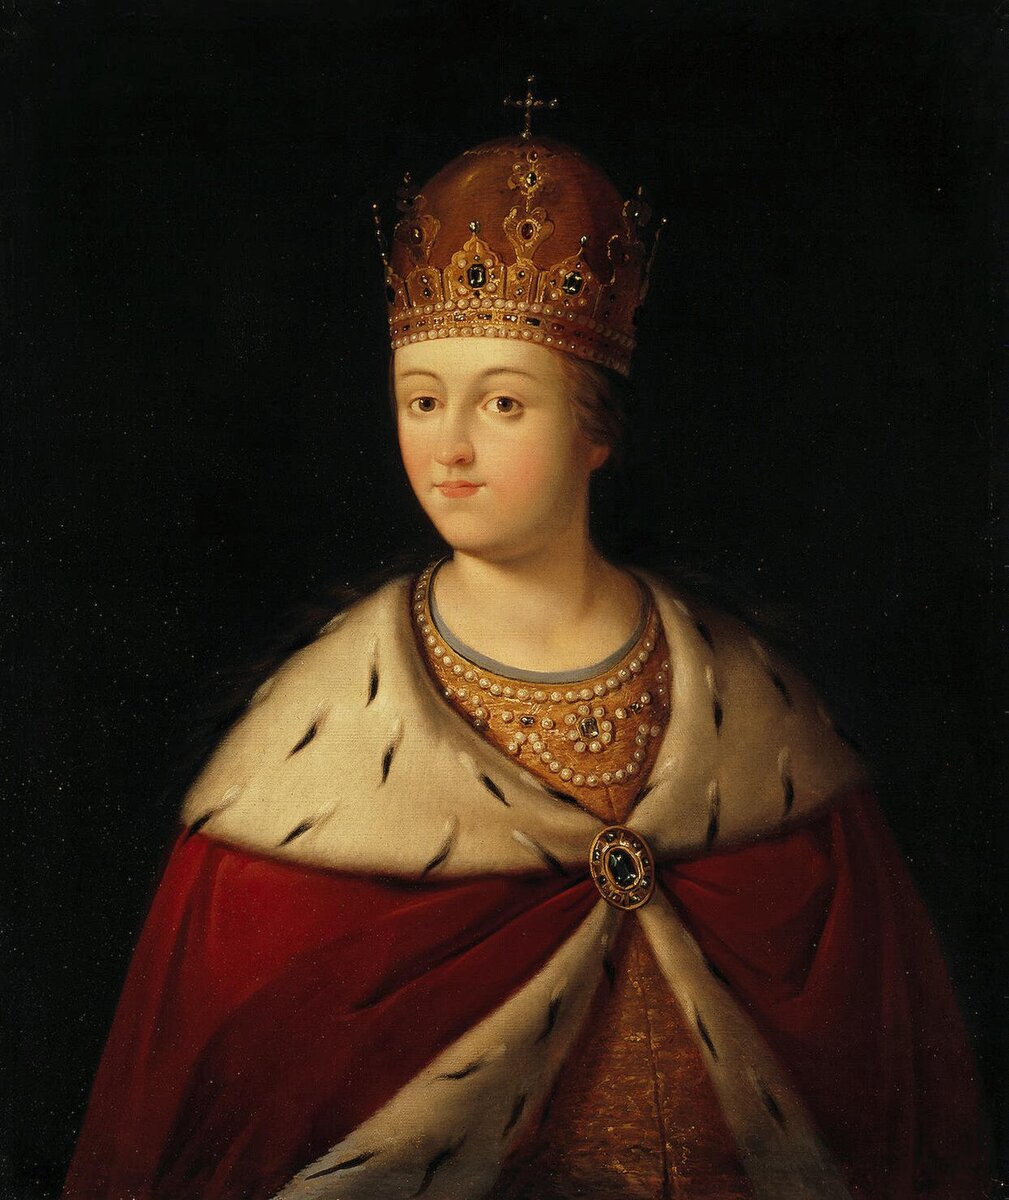 Царица Софья Алексеевна (17 (27) сентября 1657 года - 3 июля  (15) 1704 года).